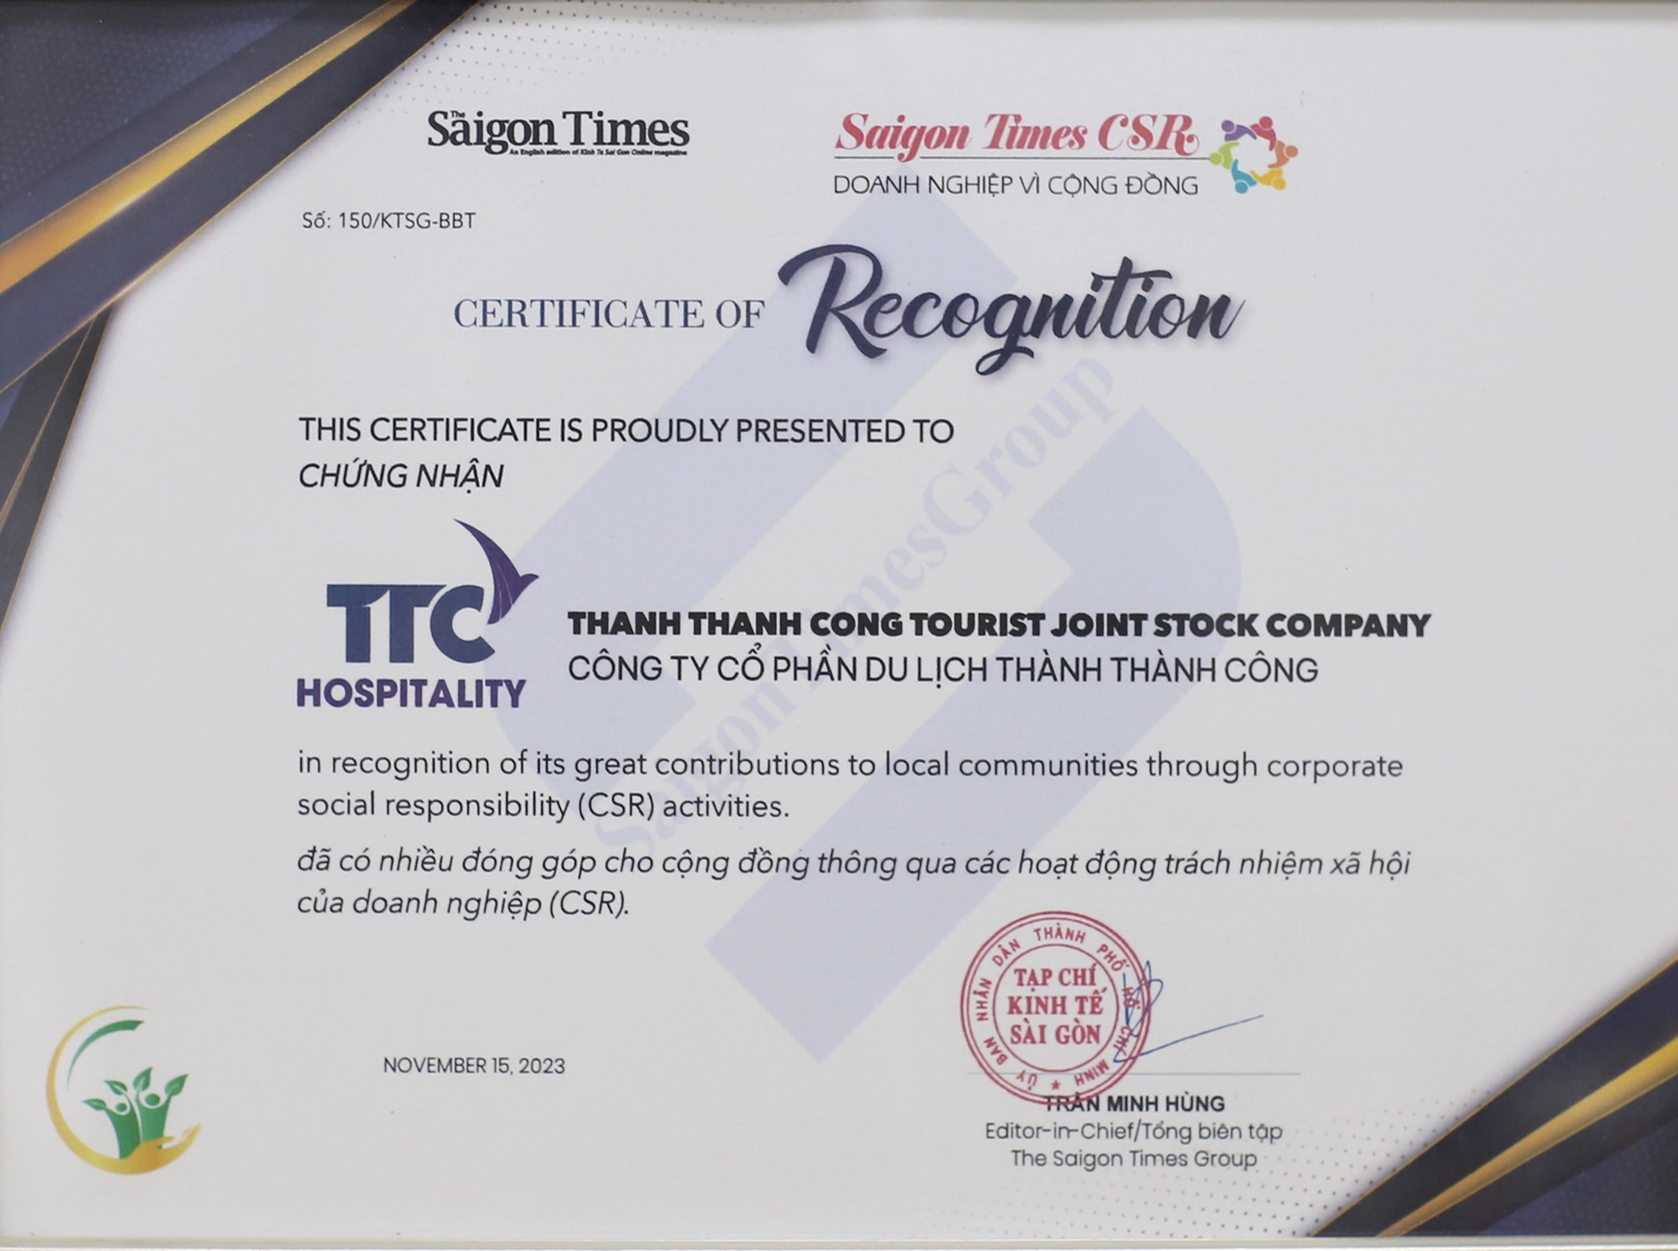 TTC Hospitality nhận vinh danh Saigon Times CSR 2023 - Doanh nghiệp vì cộng đồng năm 2023 - Ảnh 3.